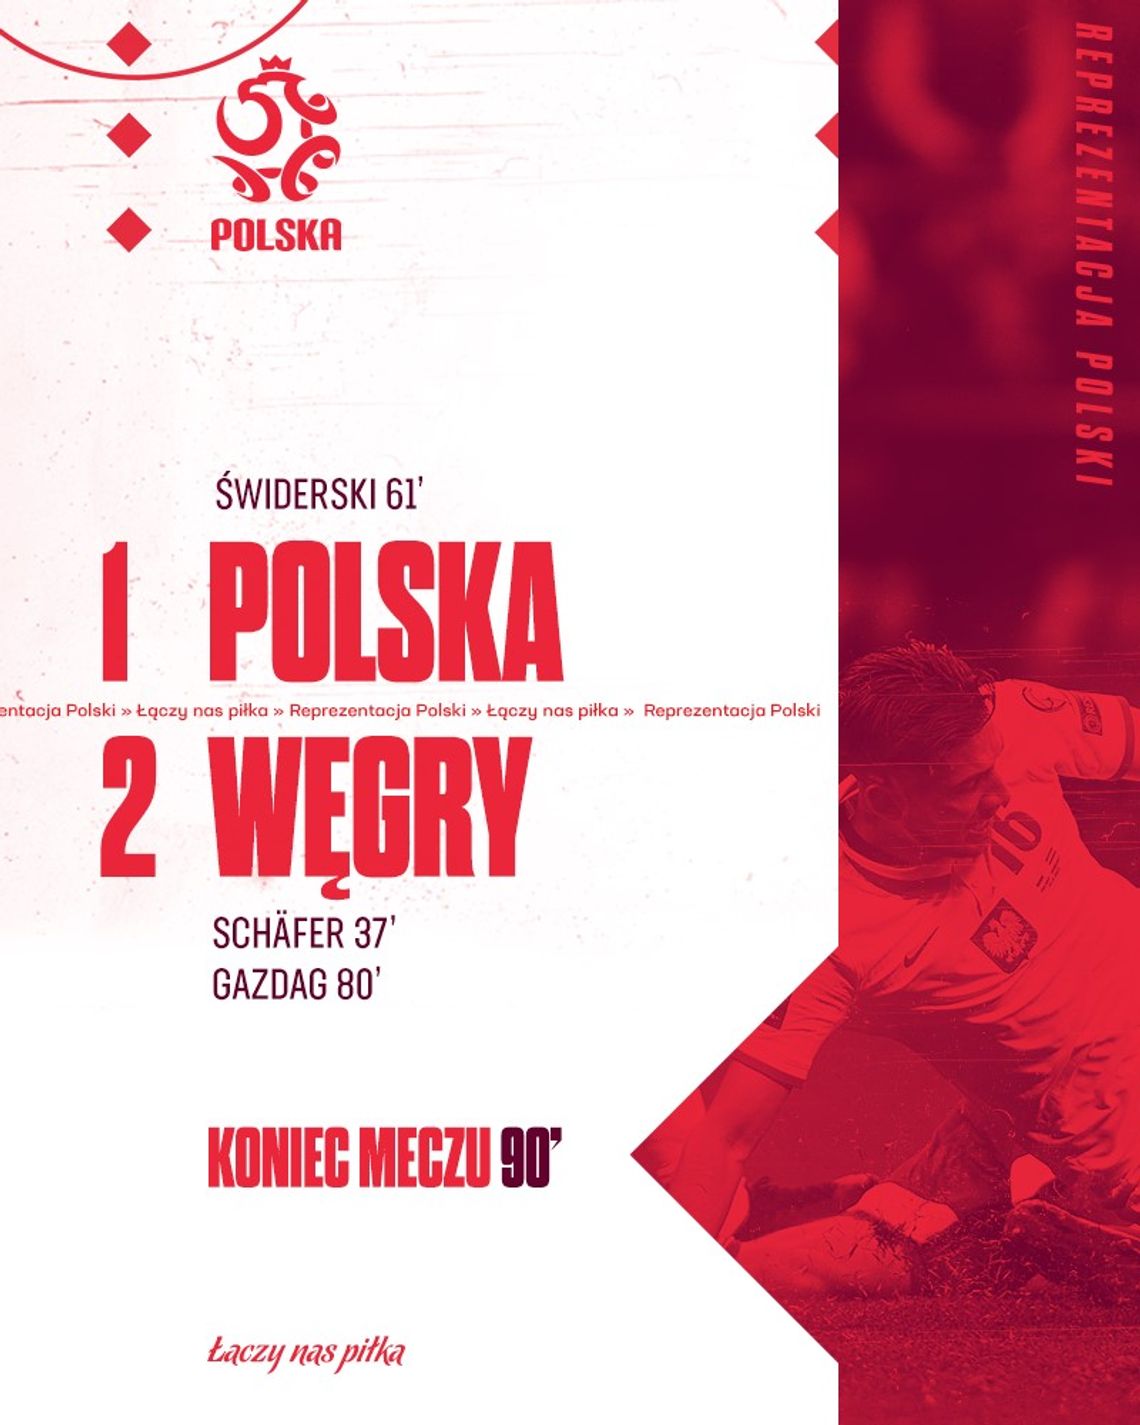 Trzecia porażka Polski na Stadionie Narodowym w historii